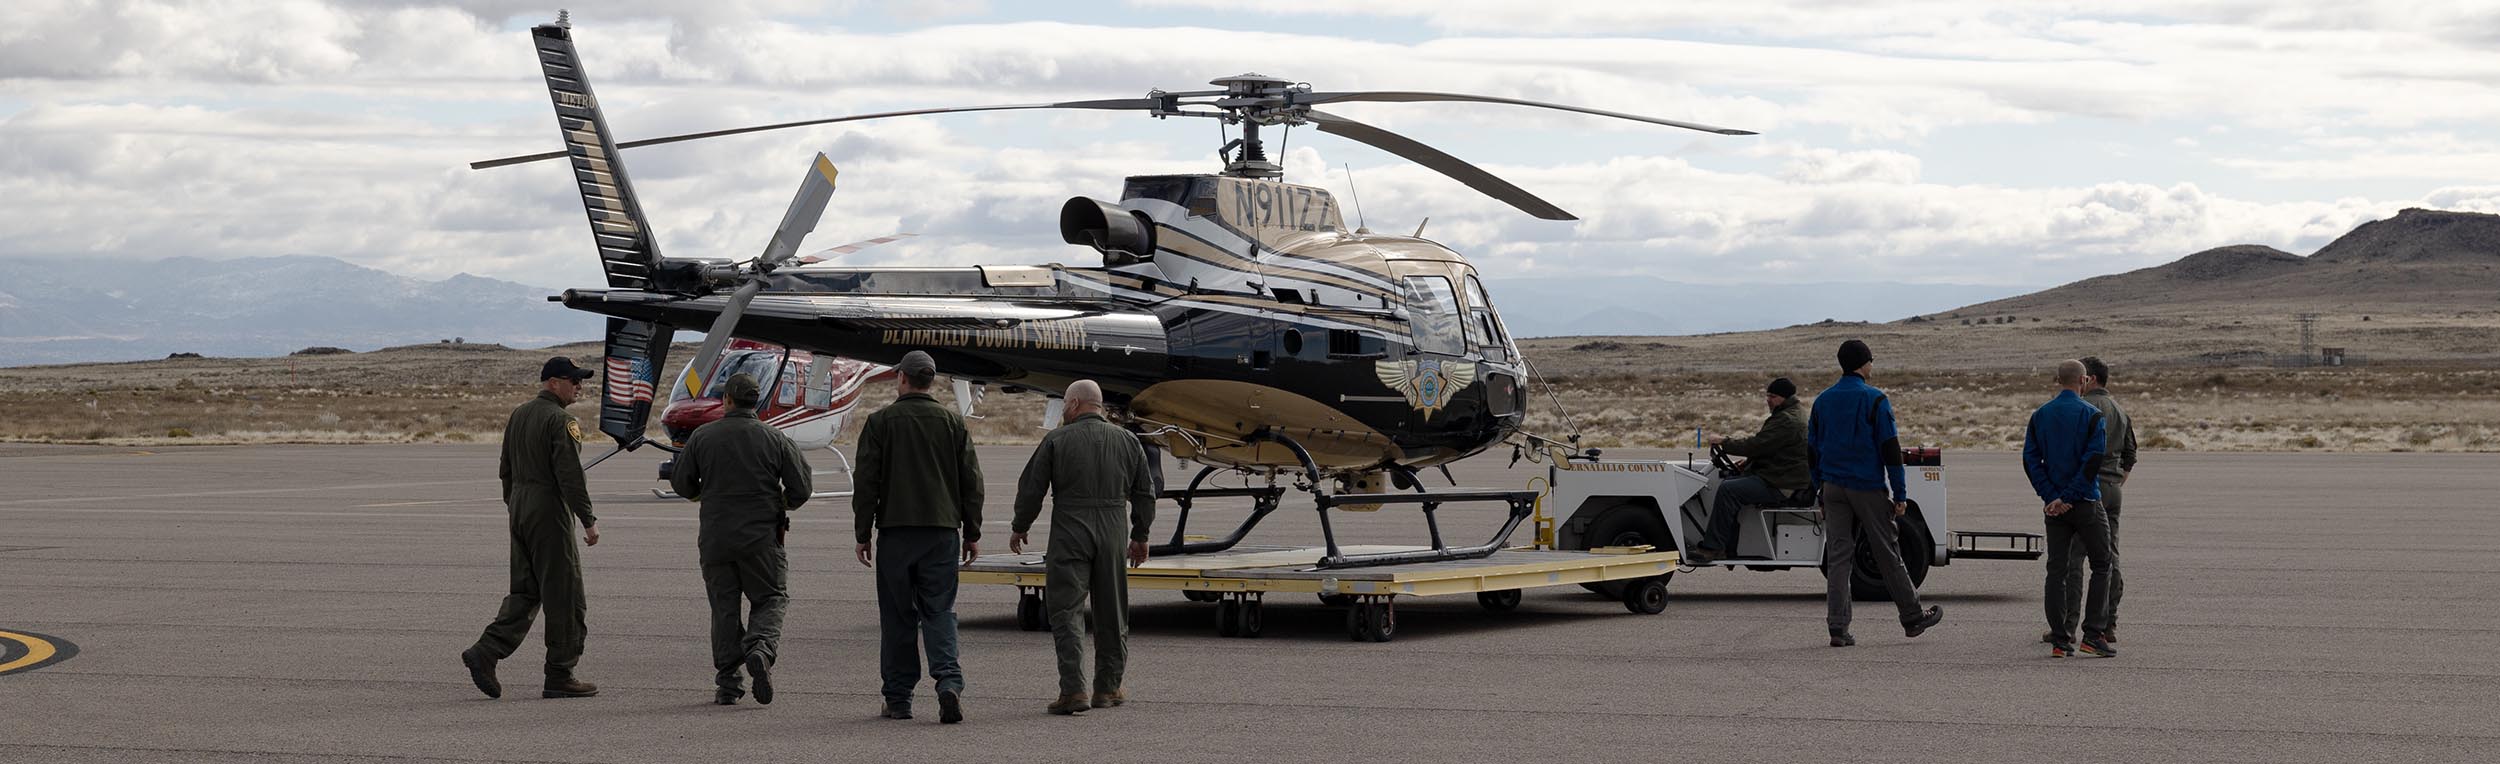 Вертолет шерифа округа Нью-Берналило